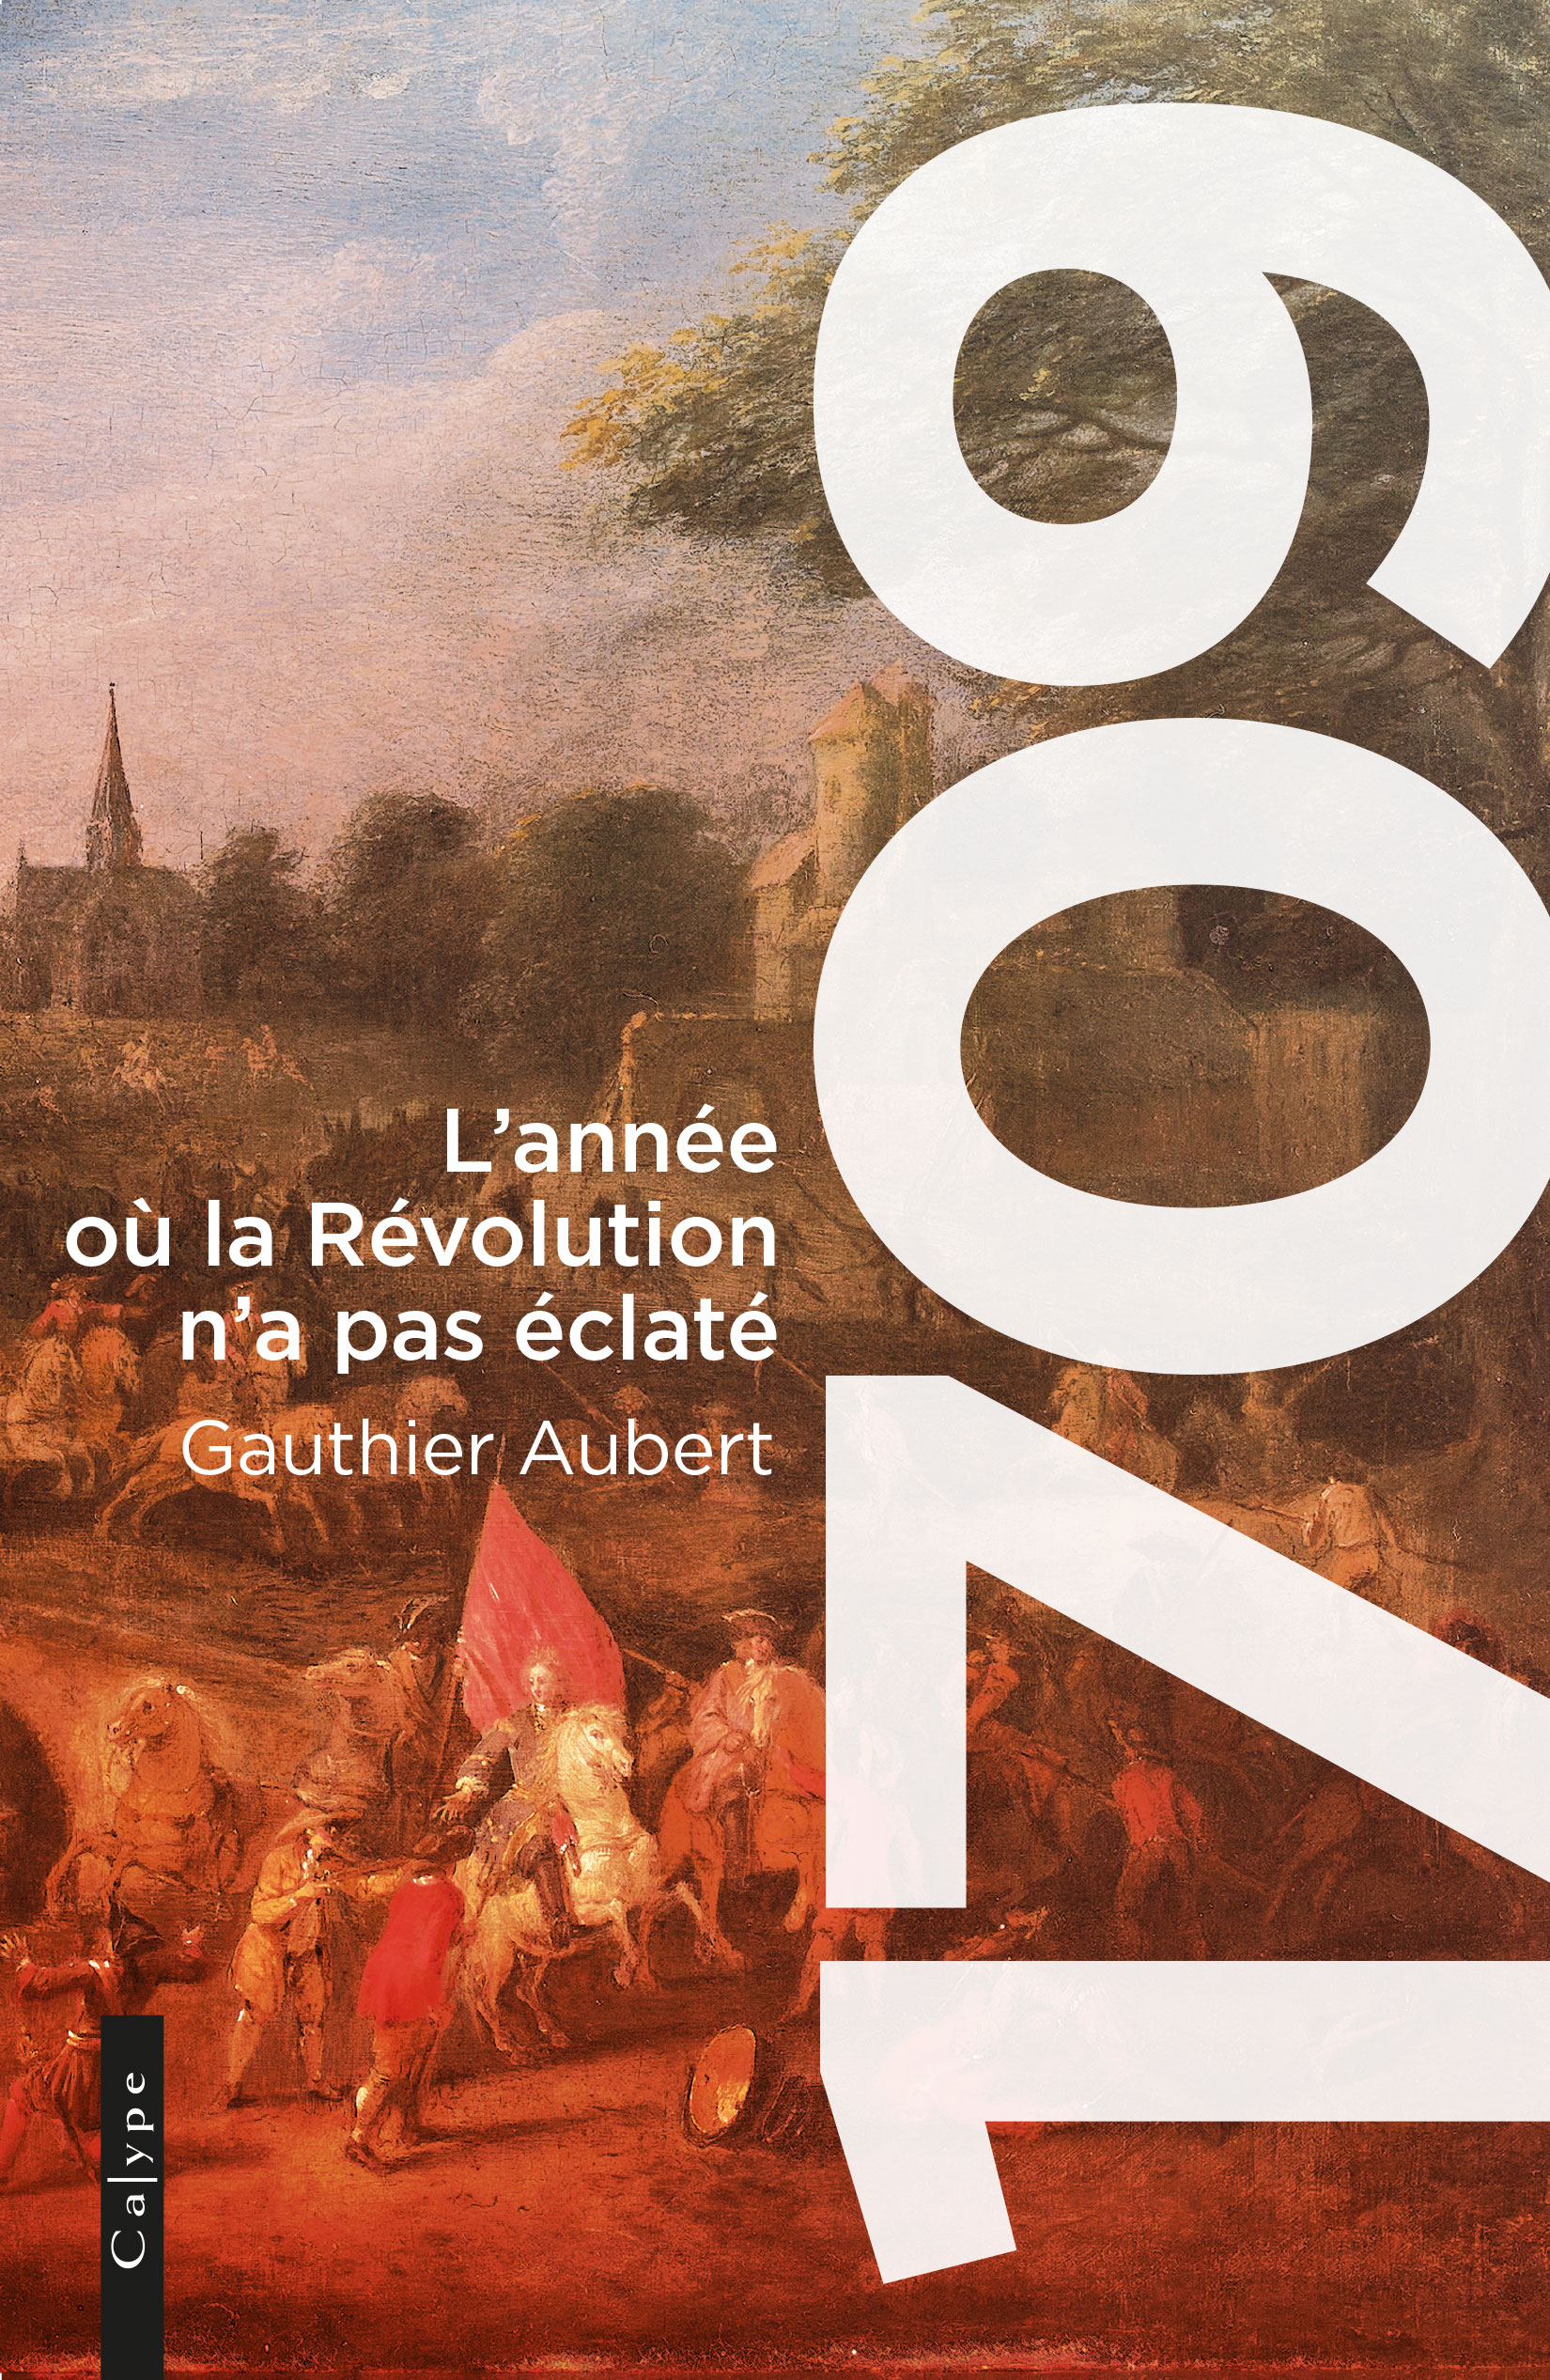 1709, l’année où la Révolution n’a pas éclaté